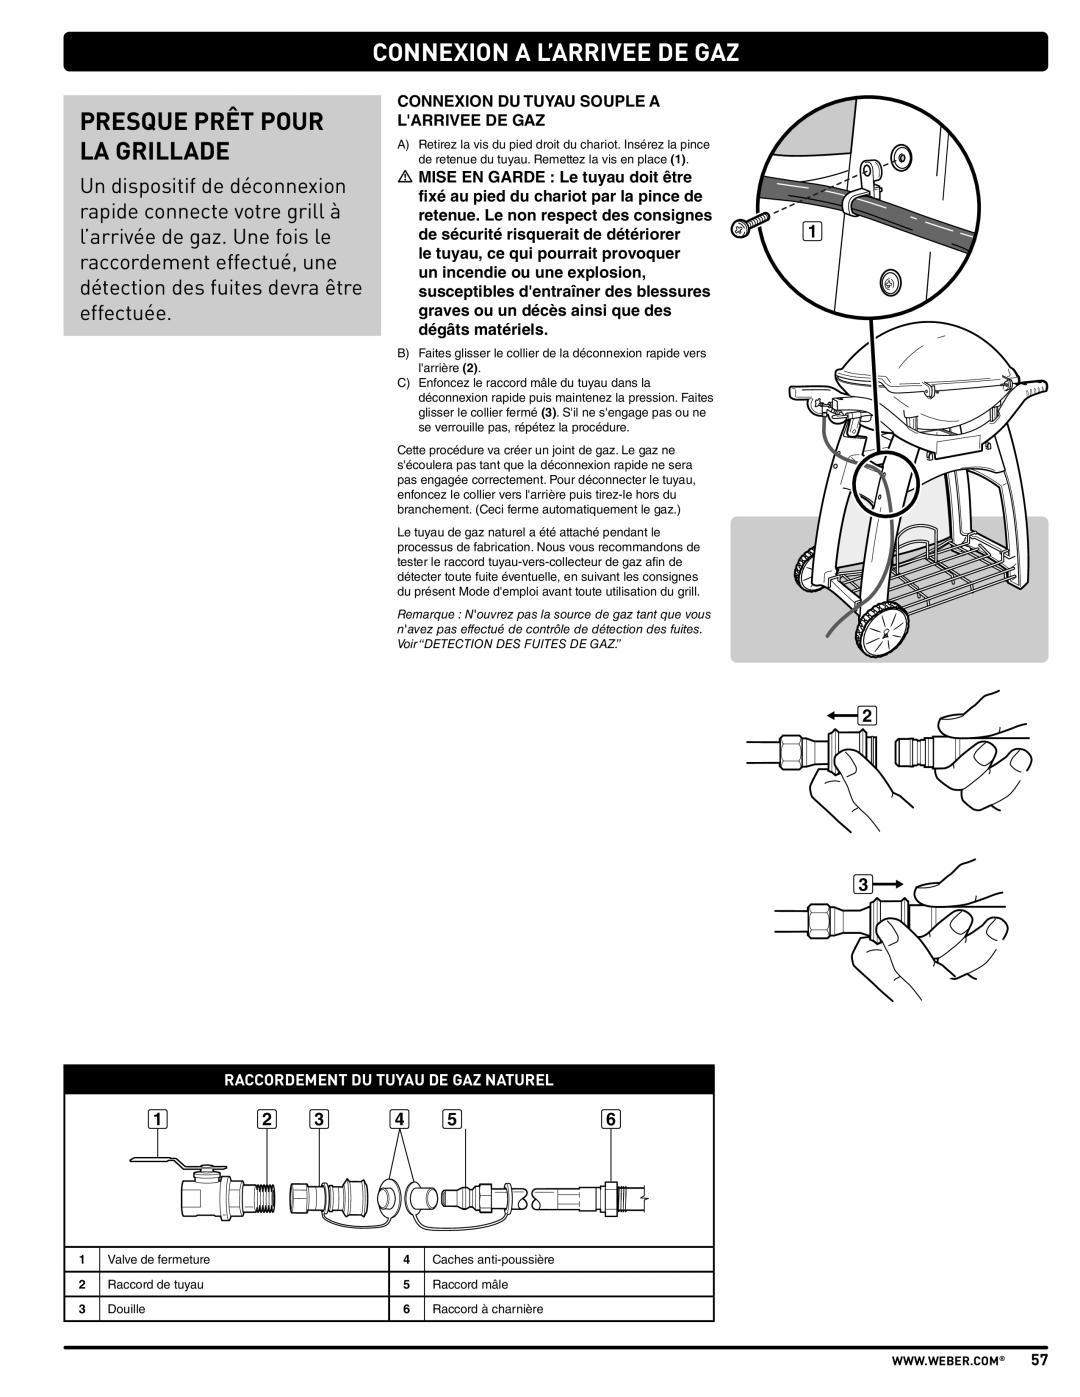 Weber 57515 manual Presque Prêt Pour La Grillade, Connexion A L’Arrivee De Gaz, Raccordement Du Tuyau De Gaz Naturel 